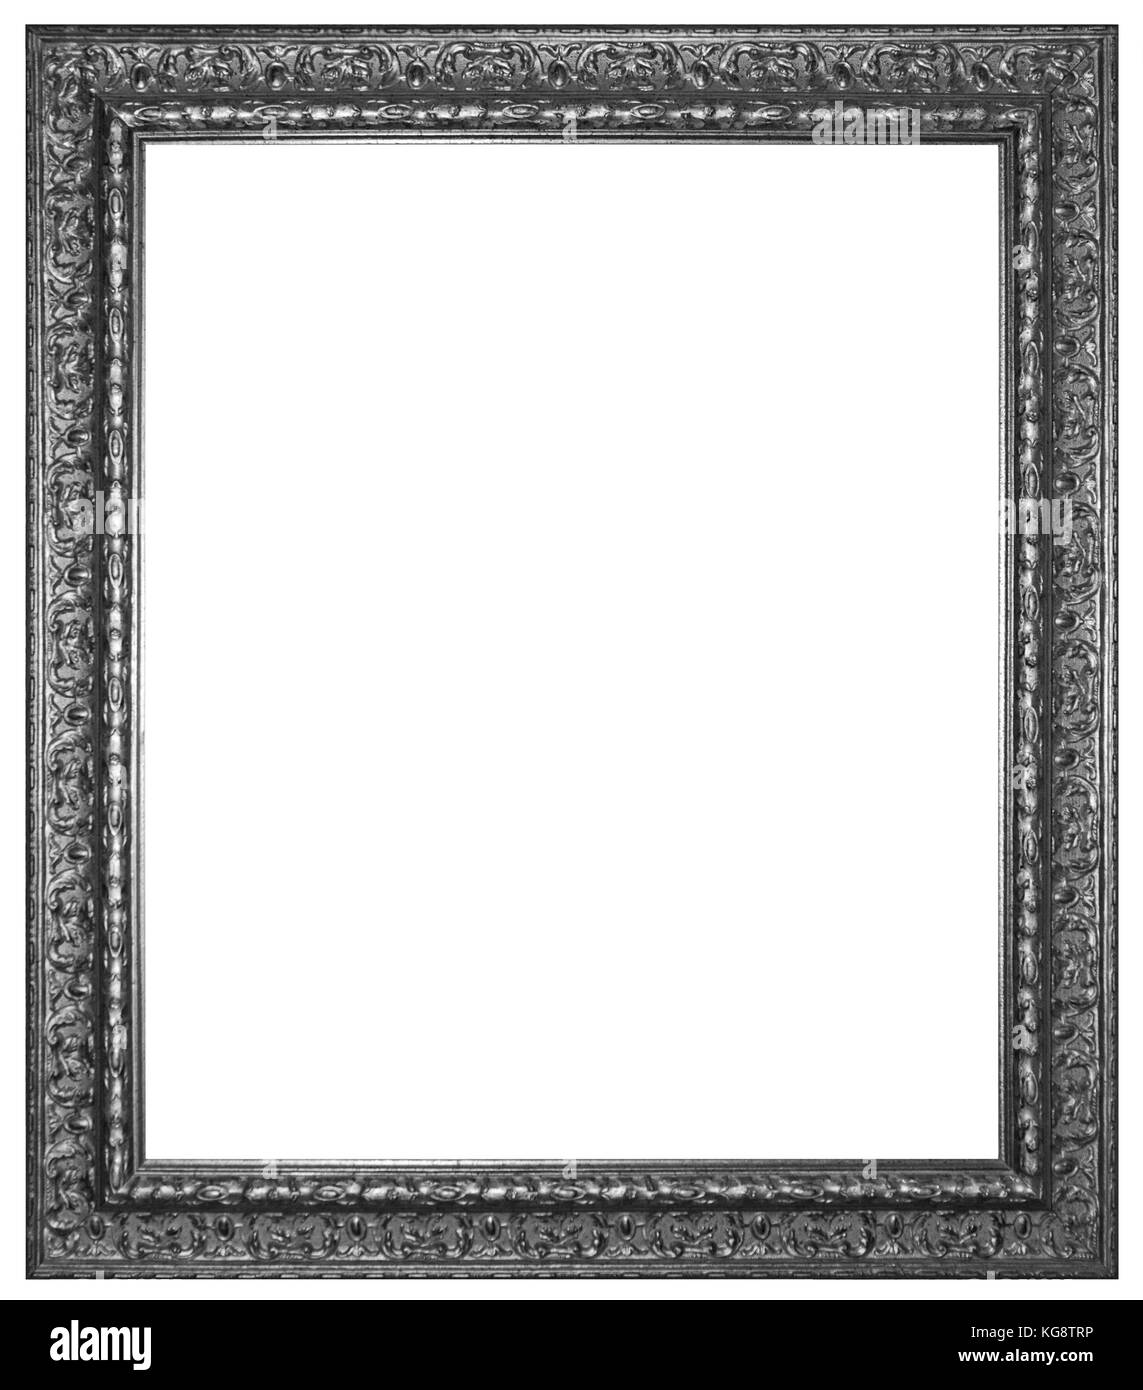 Marco de fotos de pared, juego de 20 marcos de fotos de madera, marco de  fotos para pared, marco blanco y marco negro con pintura de paisaje (color